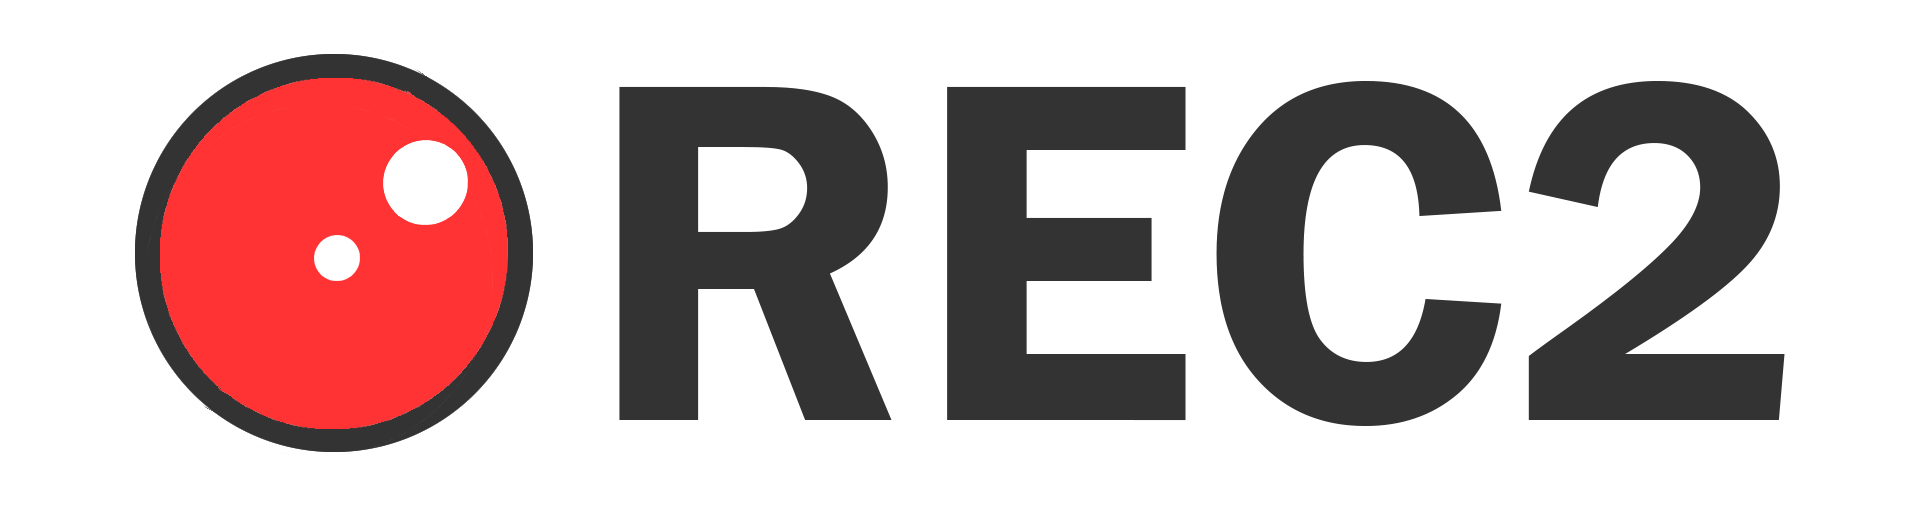 REC2_logo_v1.png